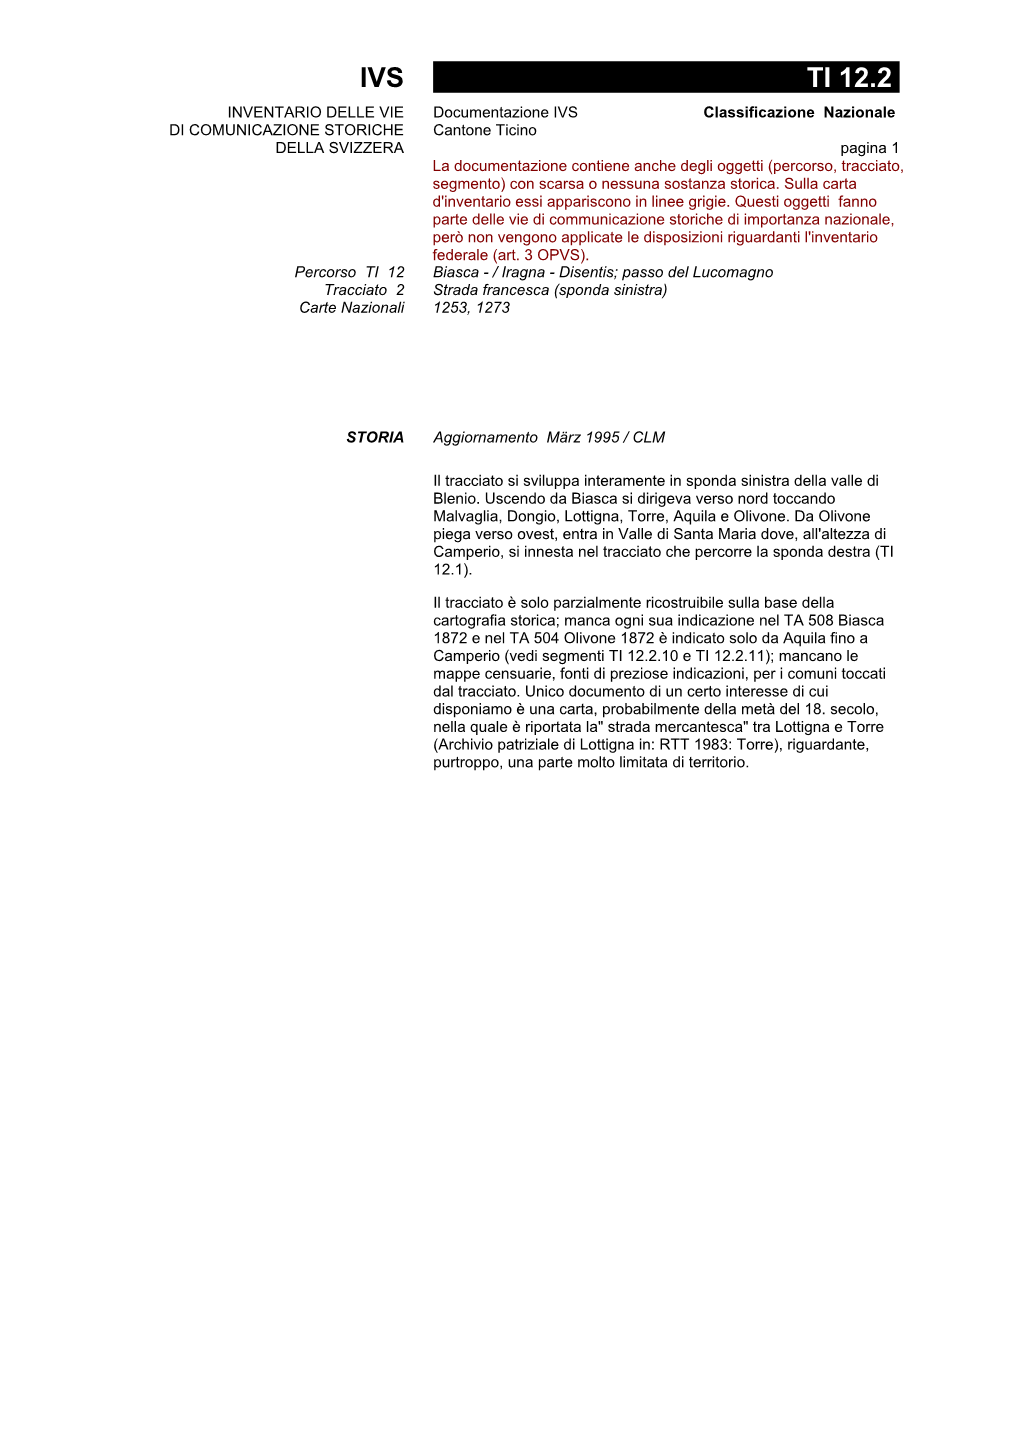 IVS TI 12.2 INVENTARIO DELLE VIE Documentazione IVS Classificazione Nazionale DI COMUNICAZIONE STORICHE Cantone Ticino DELLA SVIZZERA Pagina 1